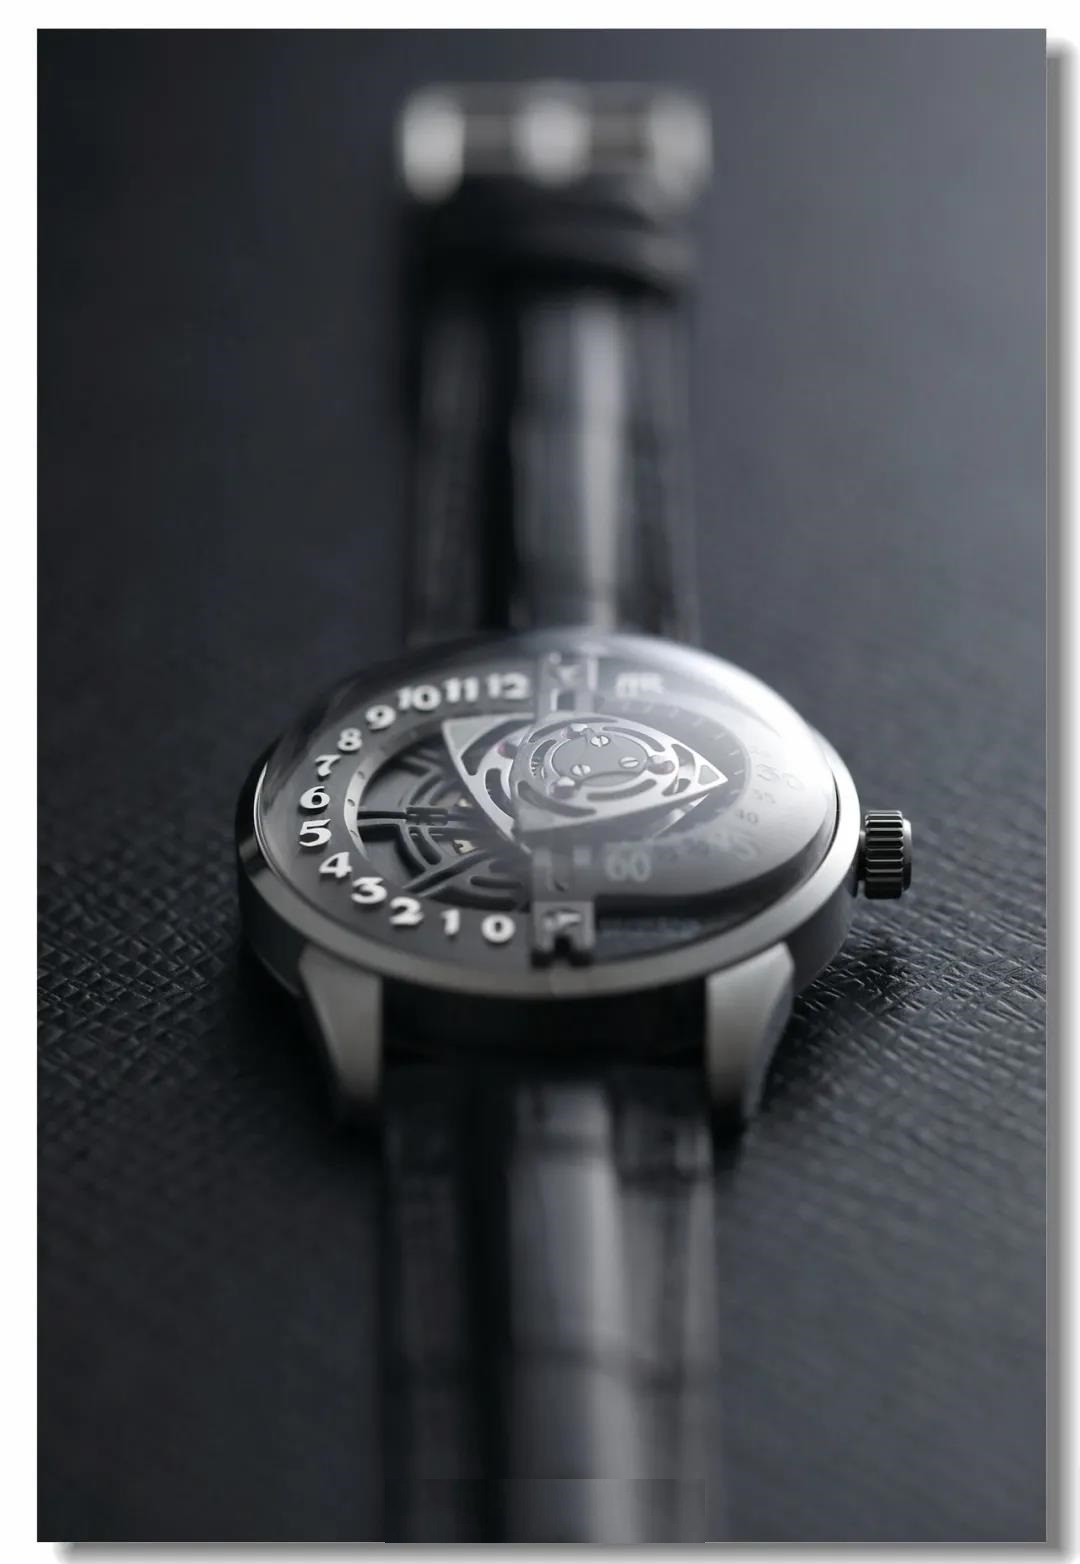 这块手表刷新了我对中国手表制造的印象